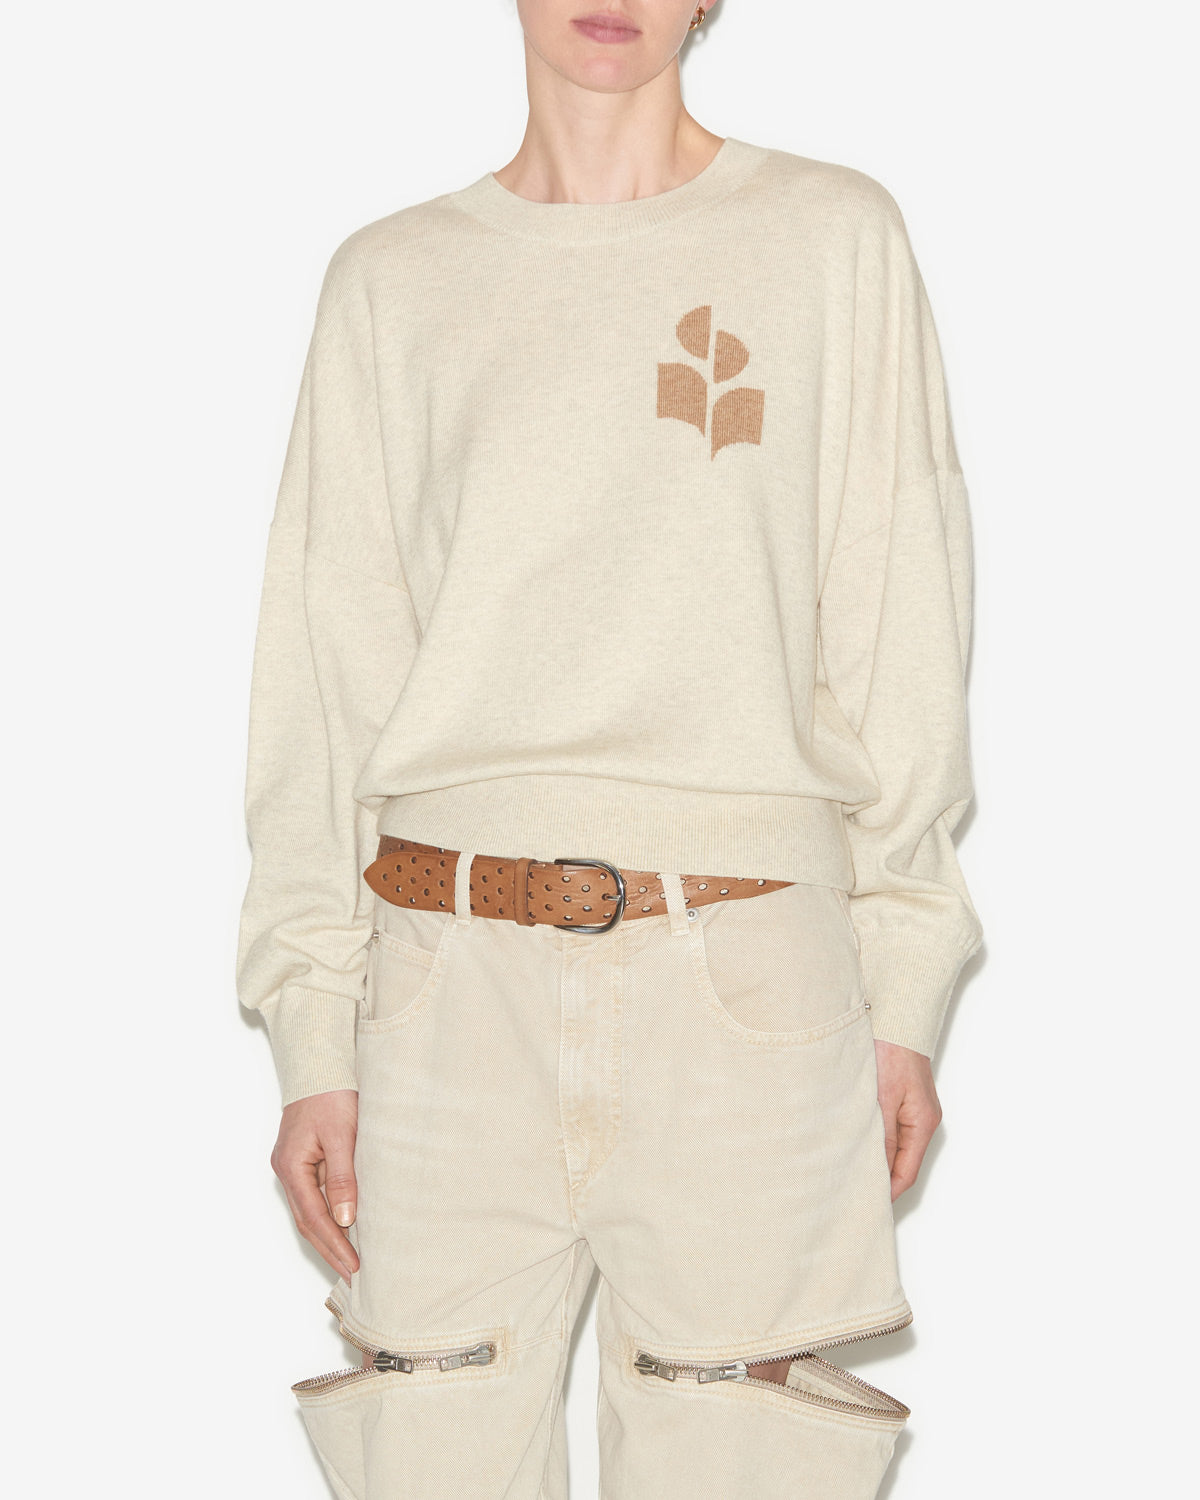 Marisans sweater Woman Light gray-camel 5